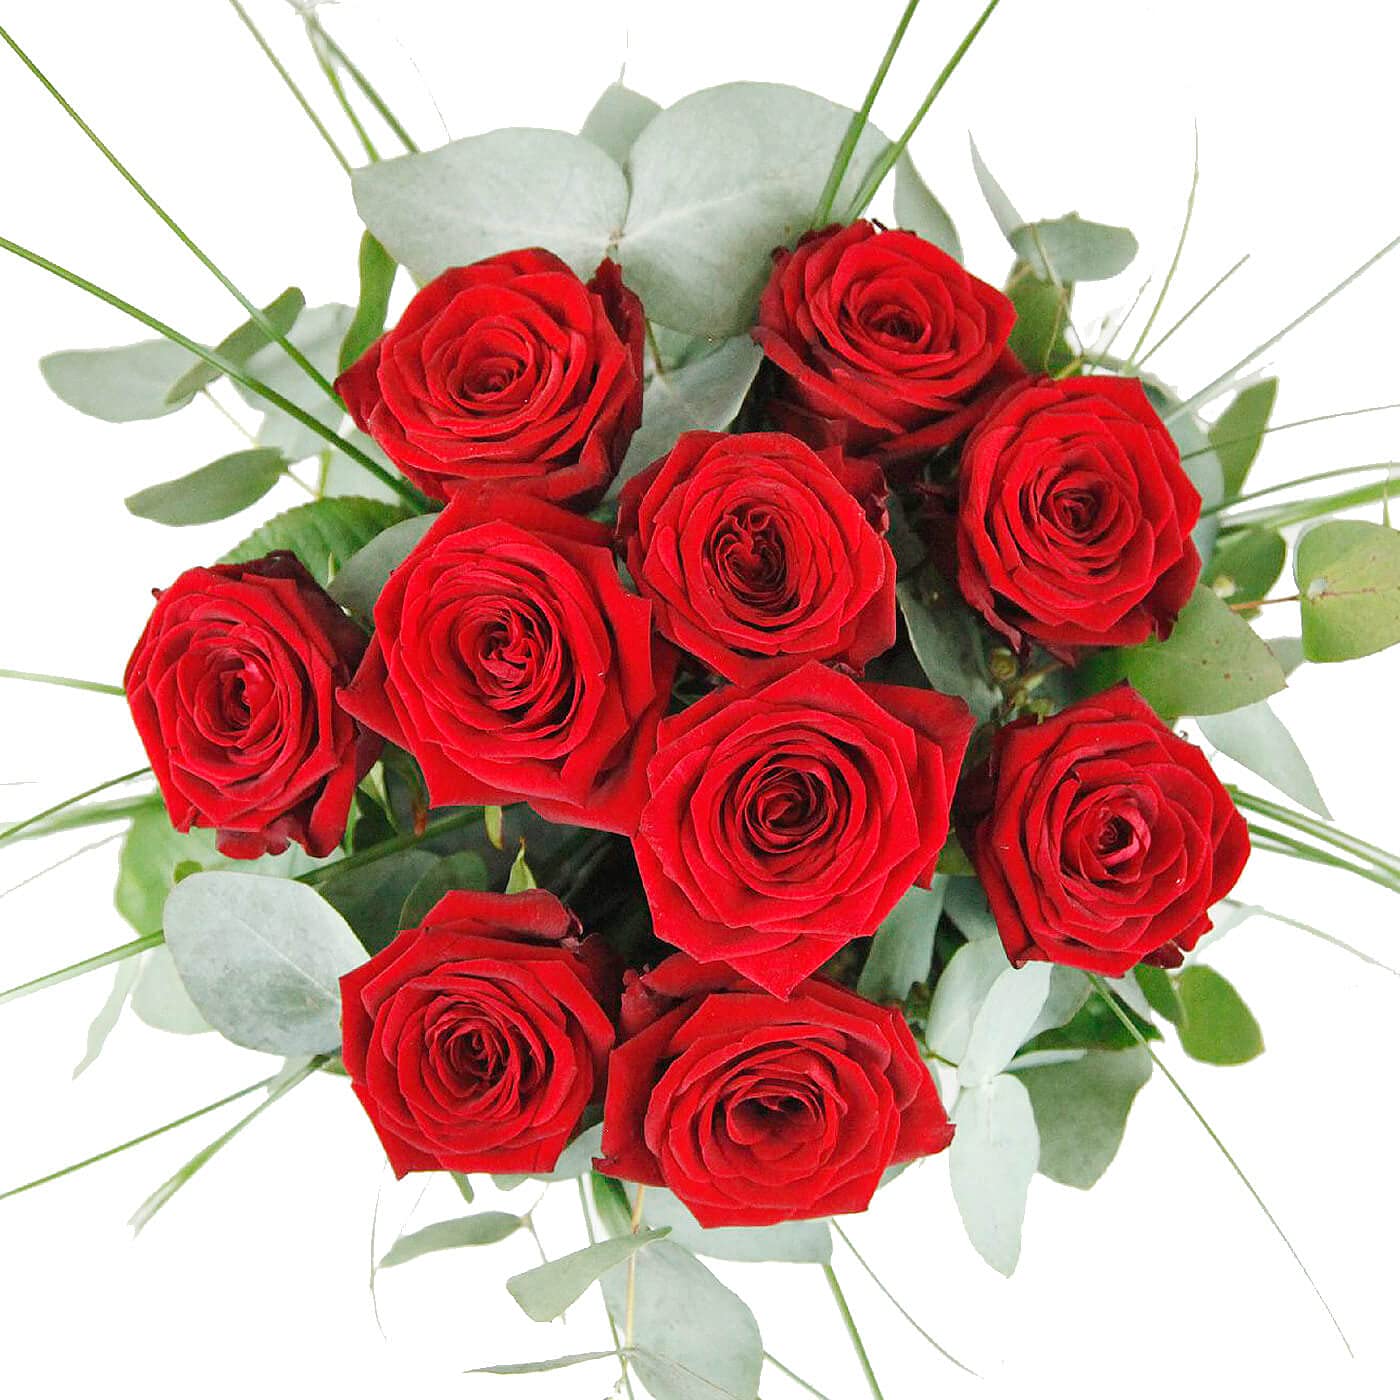 Ich liebe dich - Premium Blumenstrauß mit 10 großblütigen roten Rosen und Eukalyptus # Liebe # Valentinstag